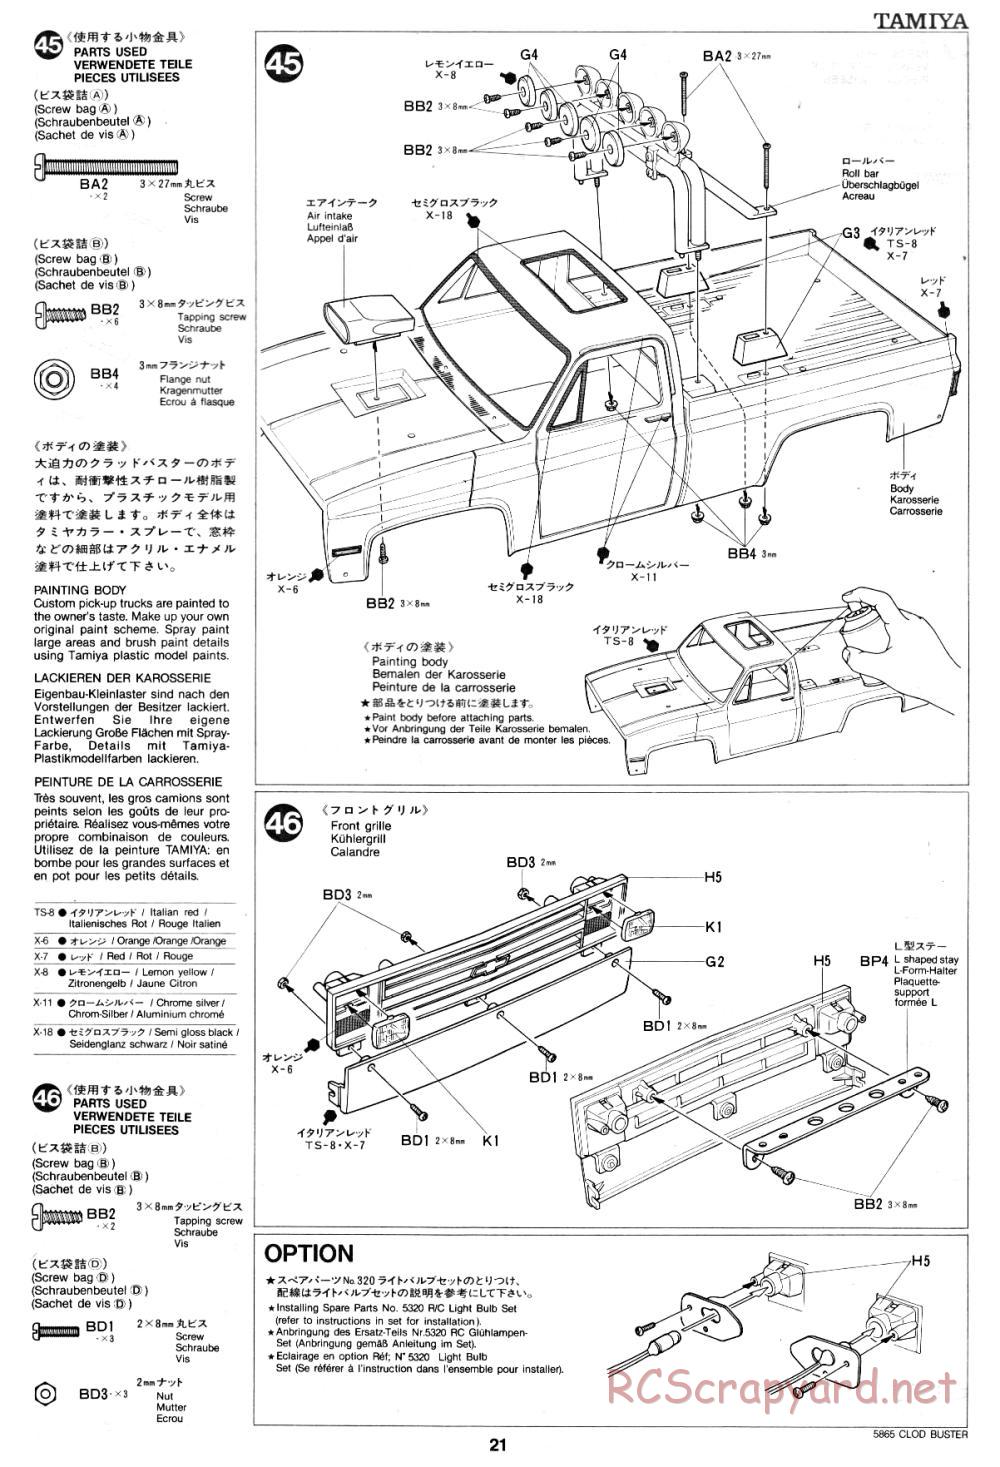 Tamiya - Clod Buster - 58065 - Manual - Page 21